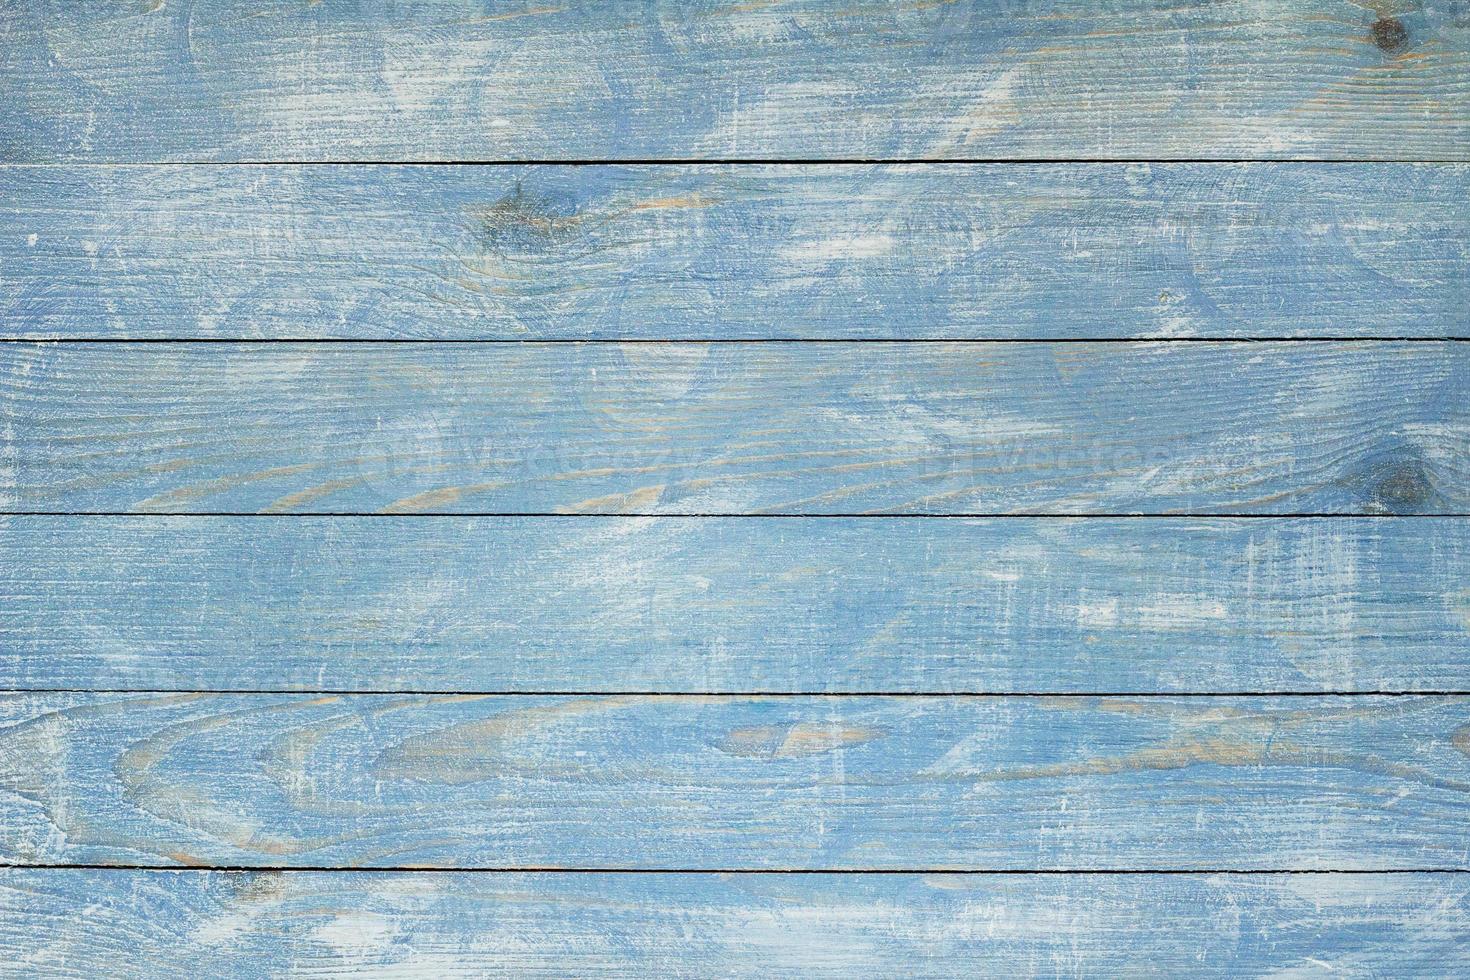 textura de fondo de madera azul vintage con nudos y agujeros de clavos. antigua pared de madera pintada. fondo abstracto azul. tableros horizontales de madera vintage azul oscuro. foto